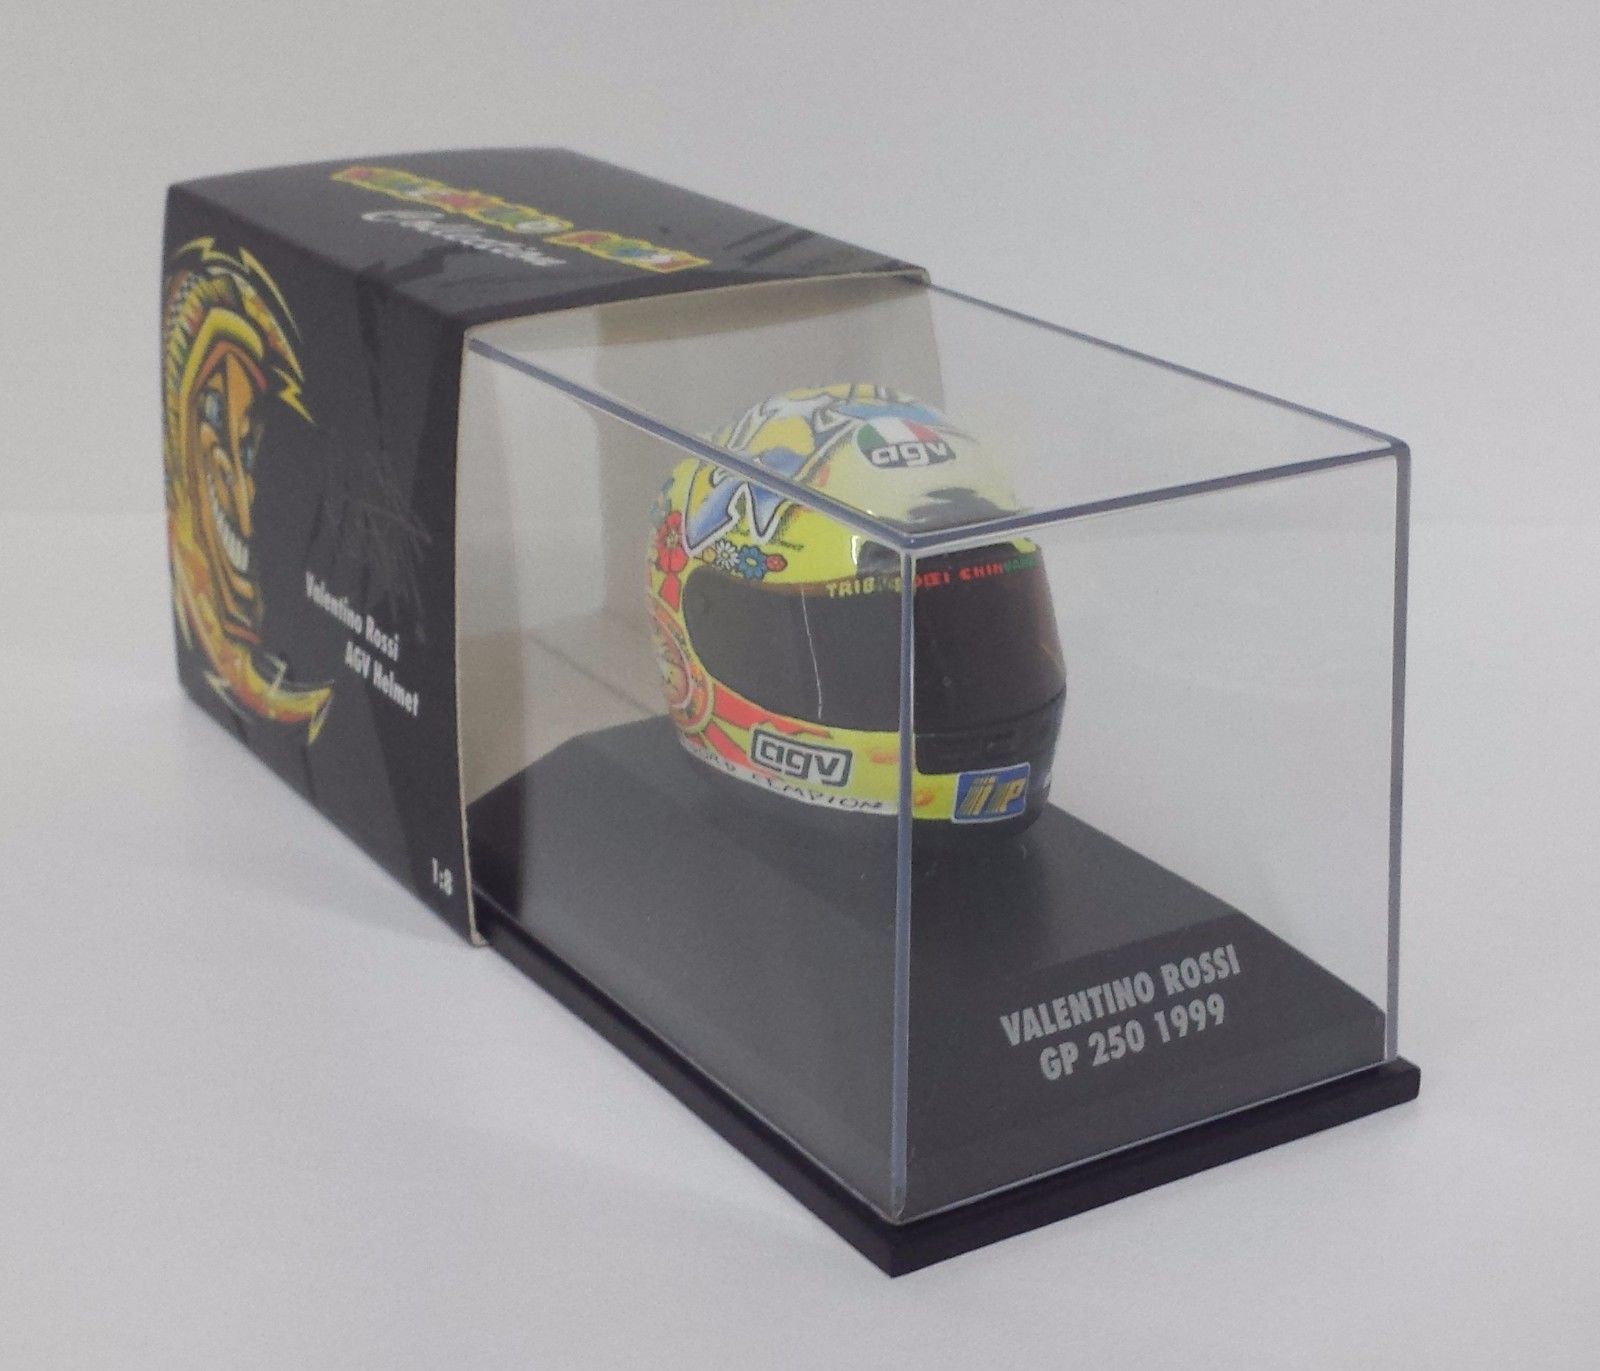 MINICHAMPS VALENTINO ROSSI AGV CASCO 1/8 - WORLD CHAMPION GP 250 1999 RARE